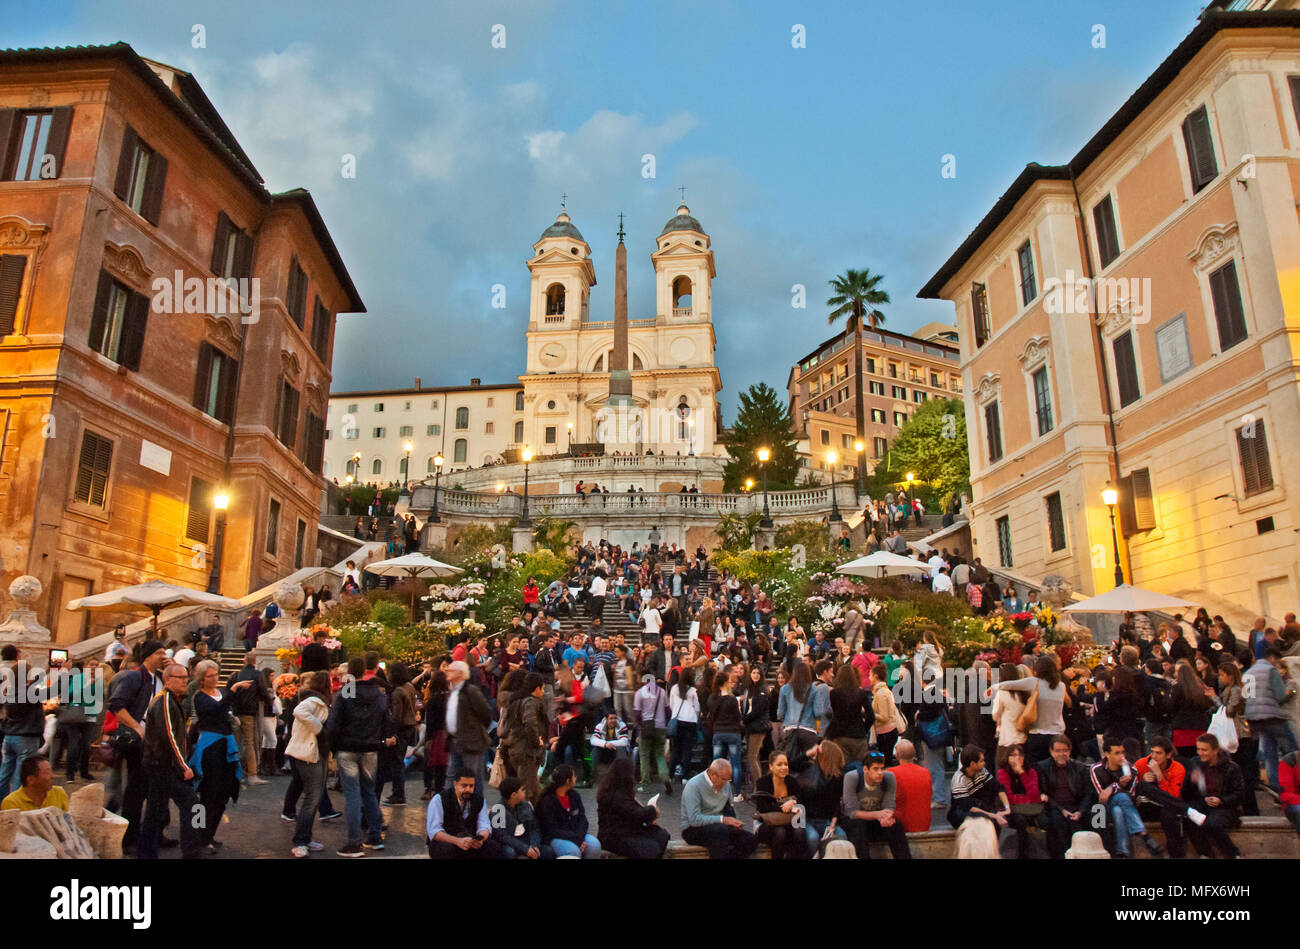 Piazza di Spagna. Rome, Italy Stock Photo